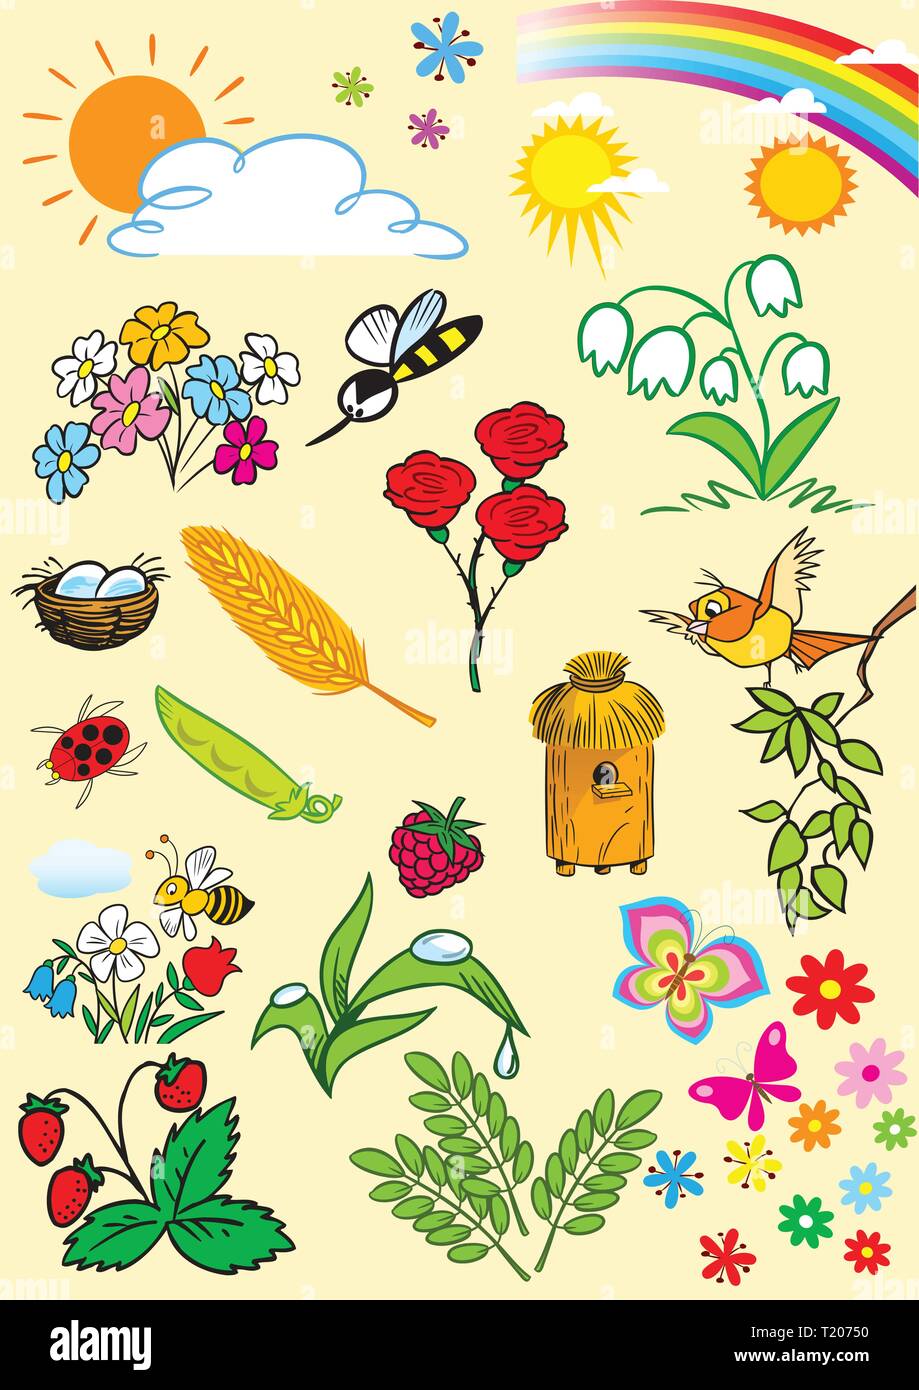 Die Abbildung zeigt eine Reihe von Cartoon Cliparts, Symbol für die Sommersaison. Abbildung auf separaten Ebenen getan. Stock Vektor